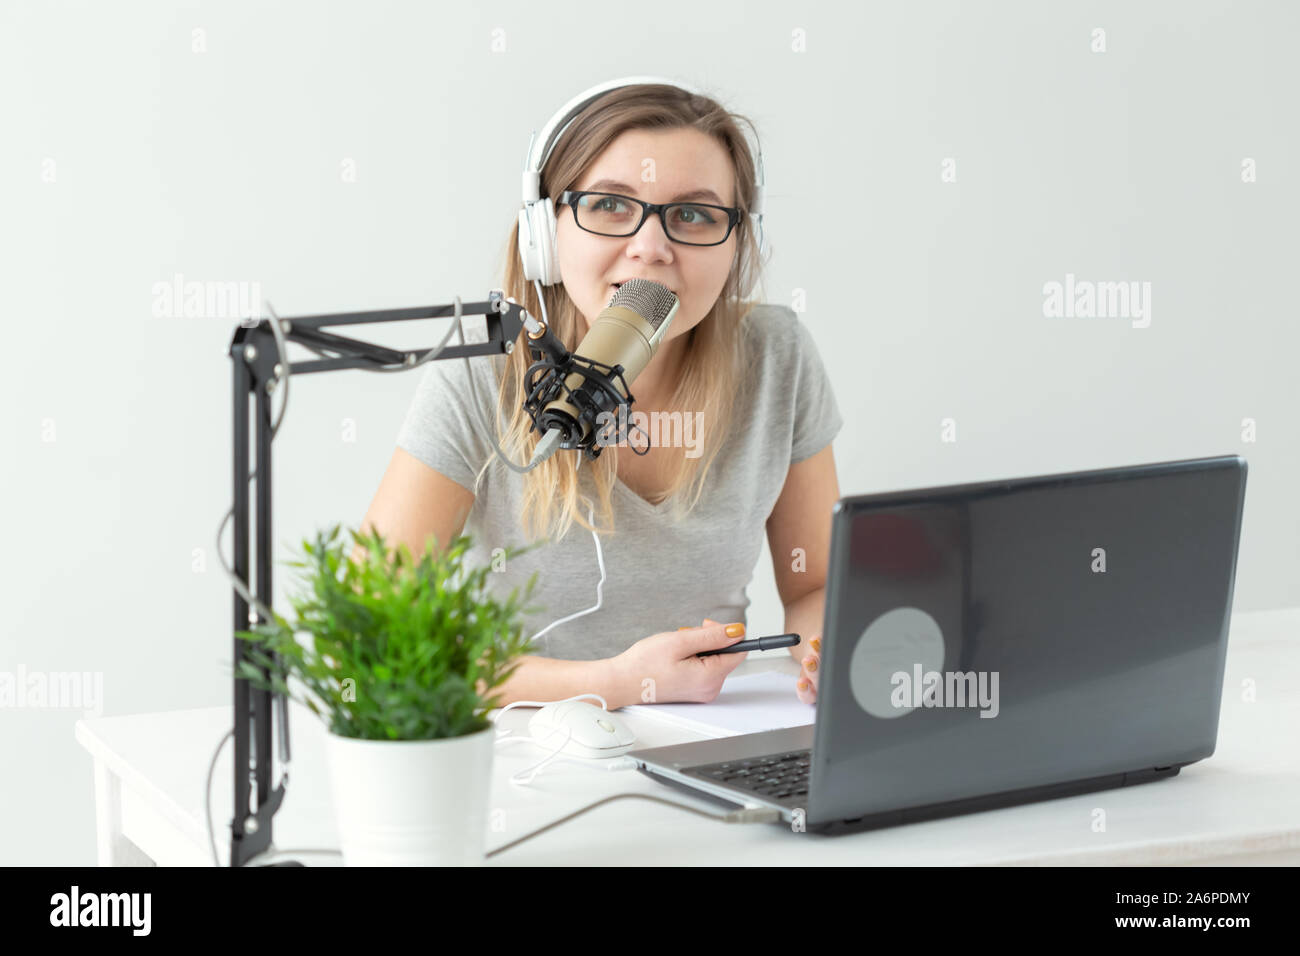 Radio, DJ, blogging e concetto di persone - donna sorridente seduto davanti a un microfono, host a radio Foto Stock